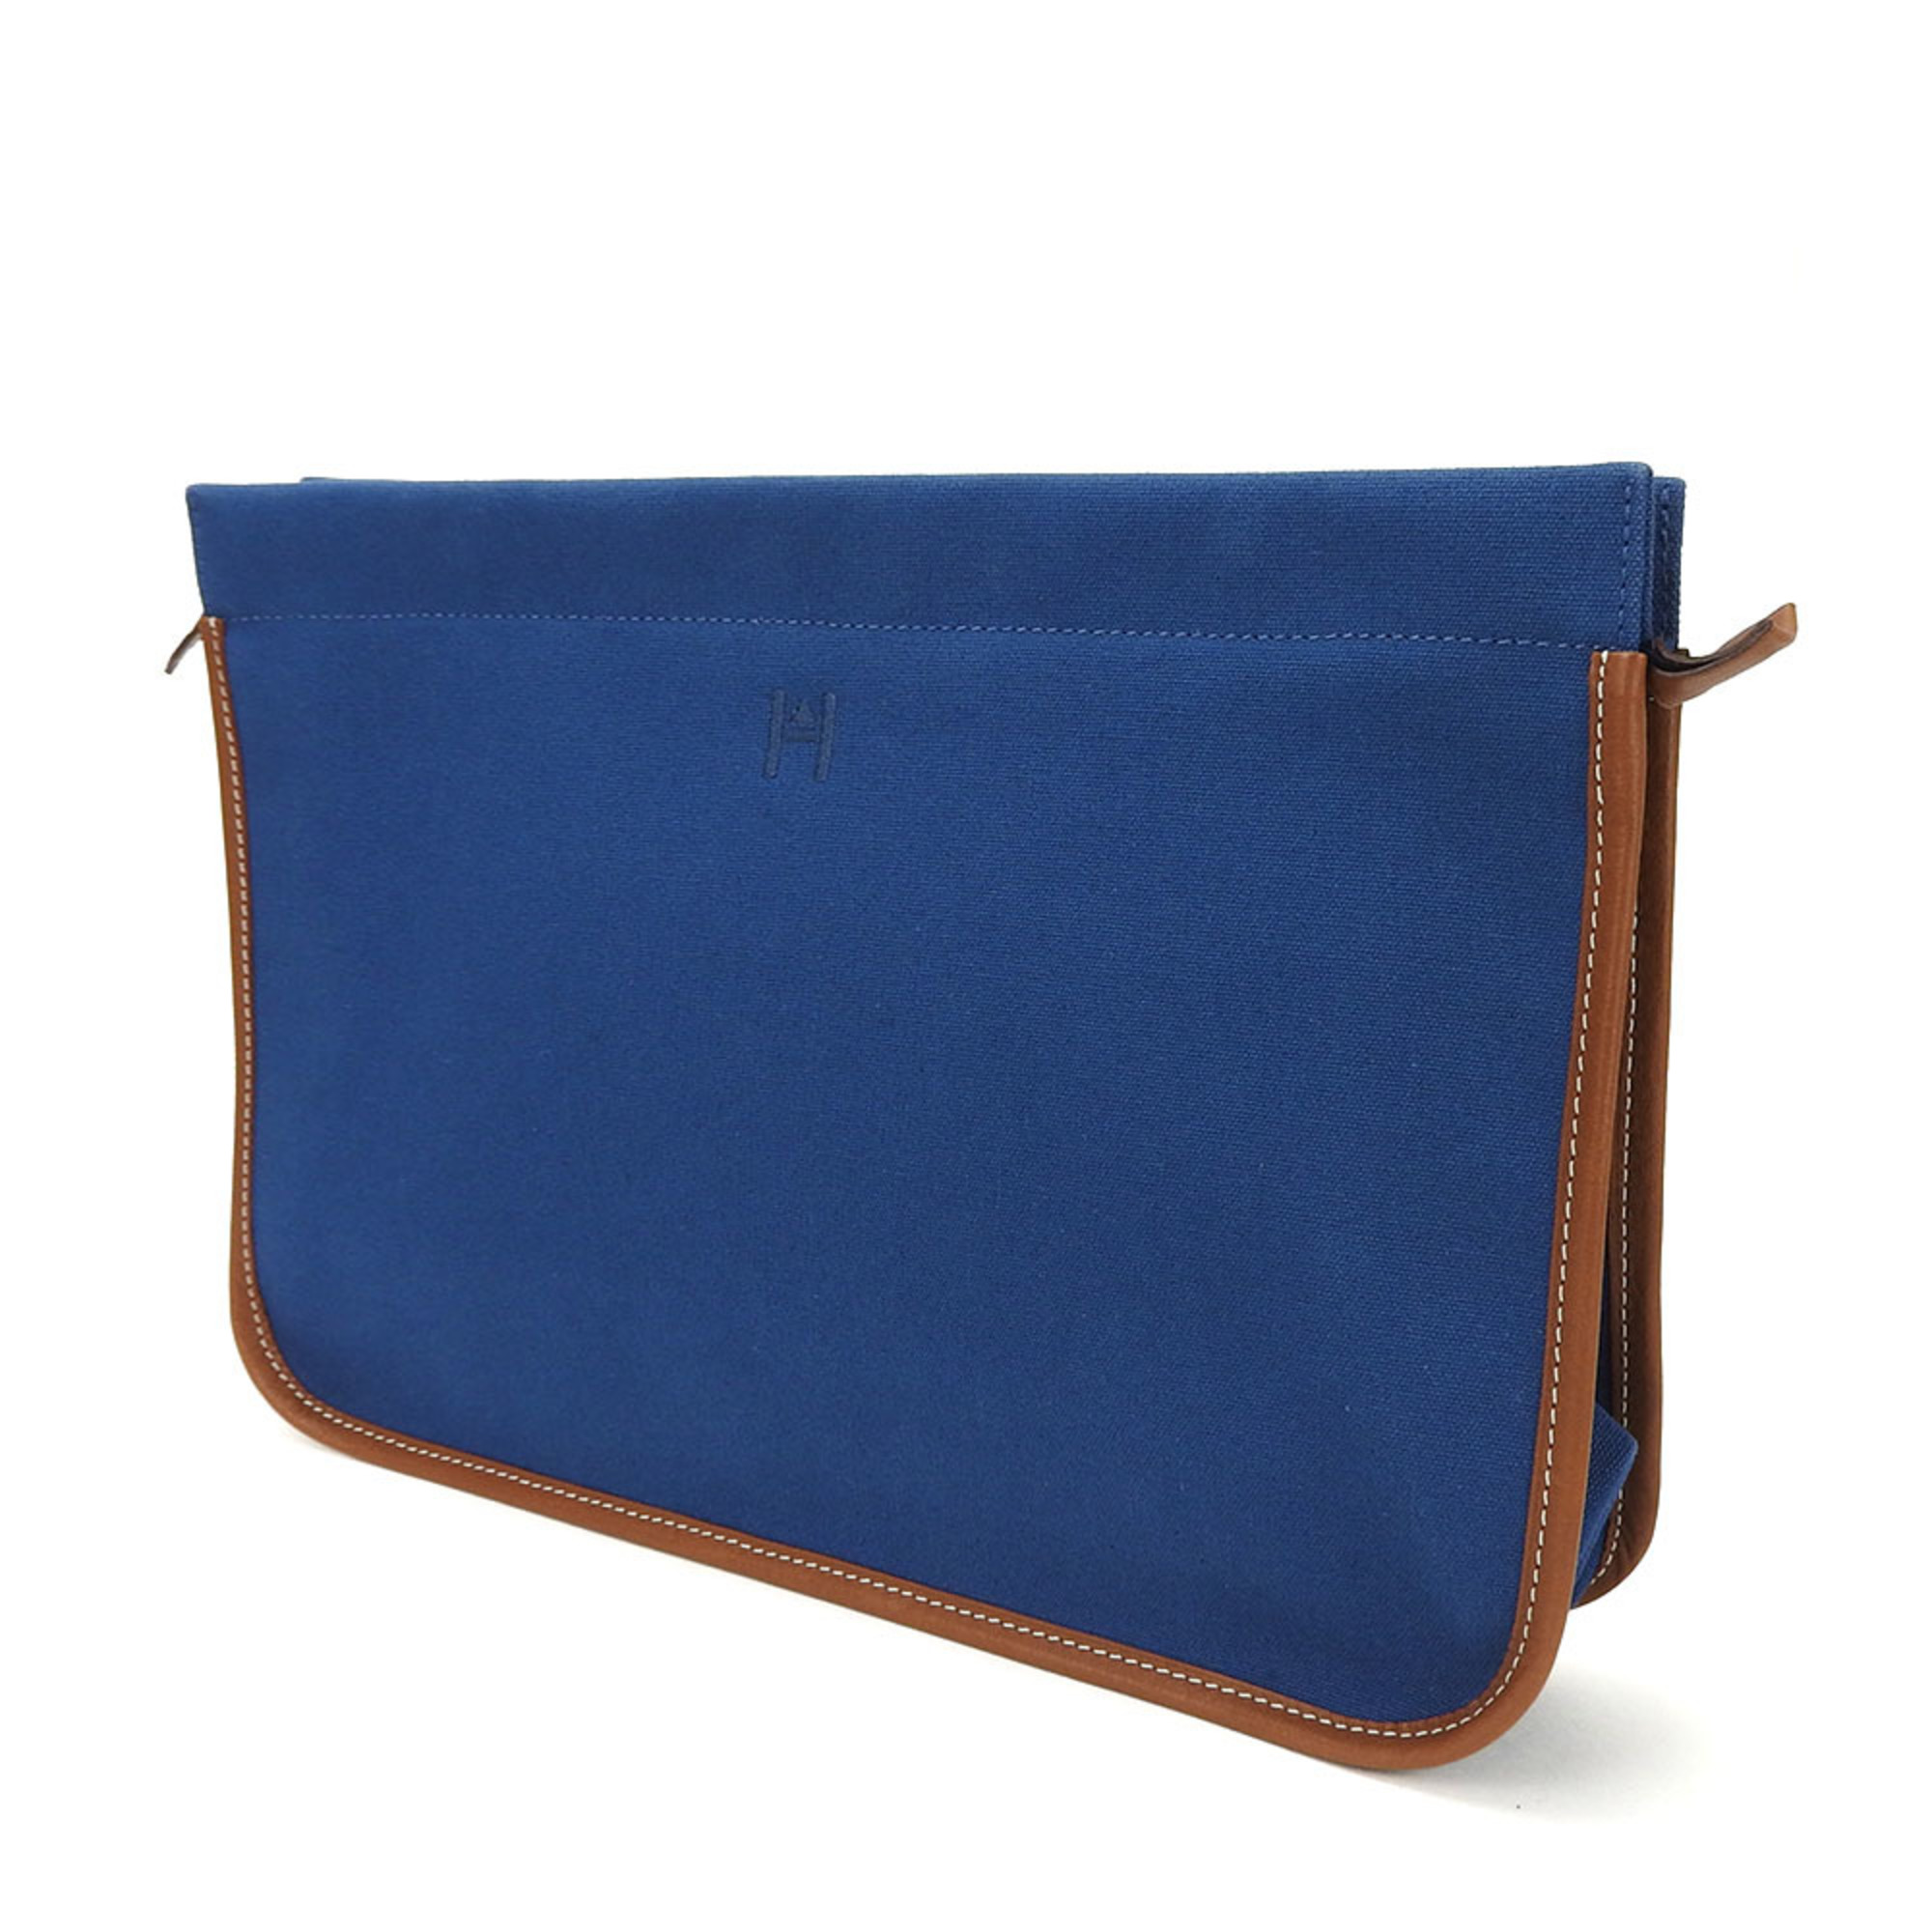 Hermes clutch bag canvas leather navy brown ladies HERMES blue